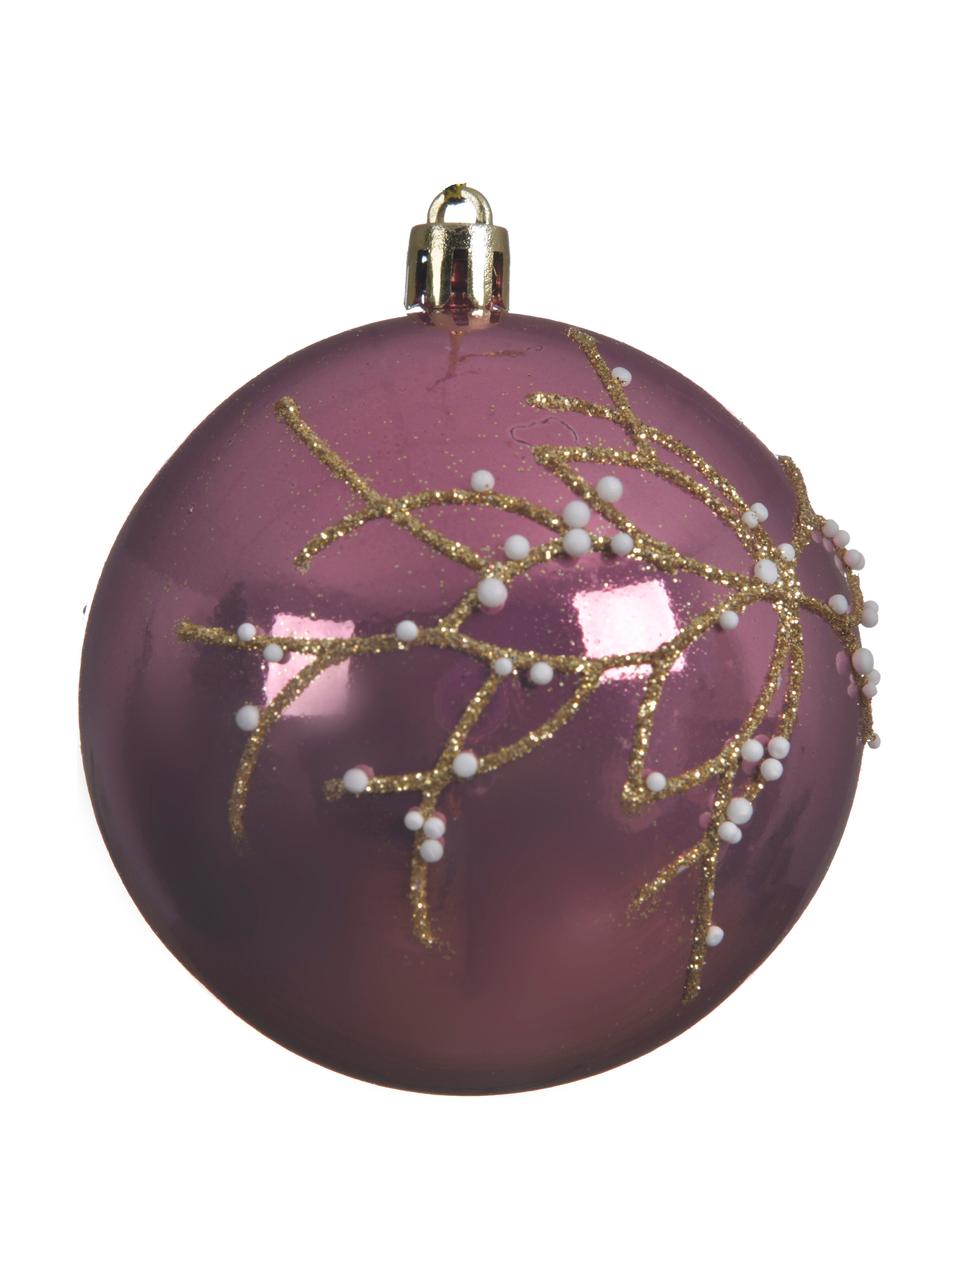 Bruchfeste Weihnachtskugeln Violetta, 4 Stück, Lila, Goldfarben, Ø 8 cm